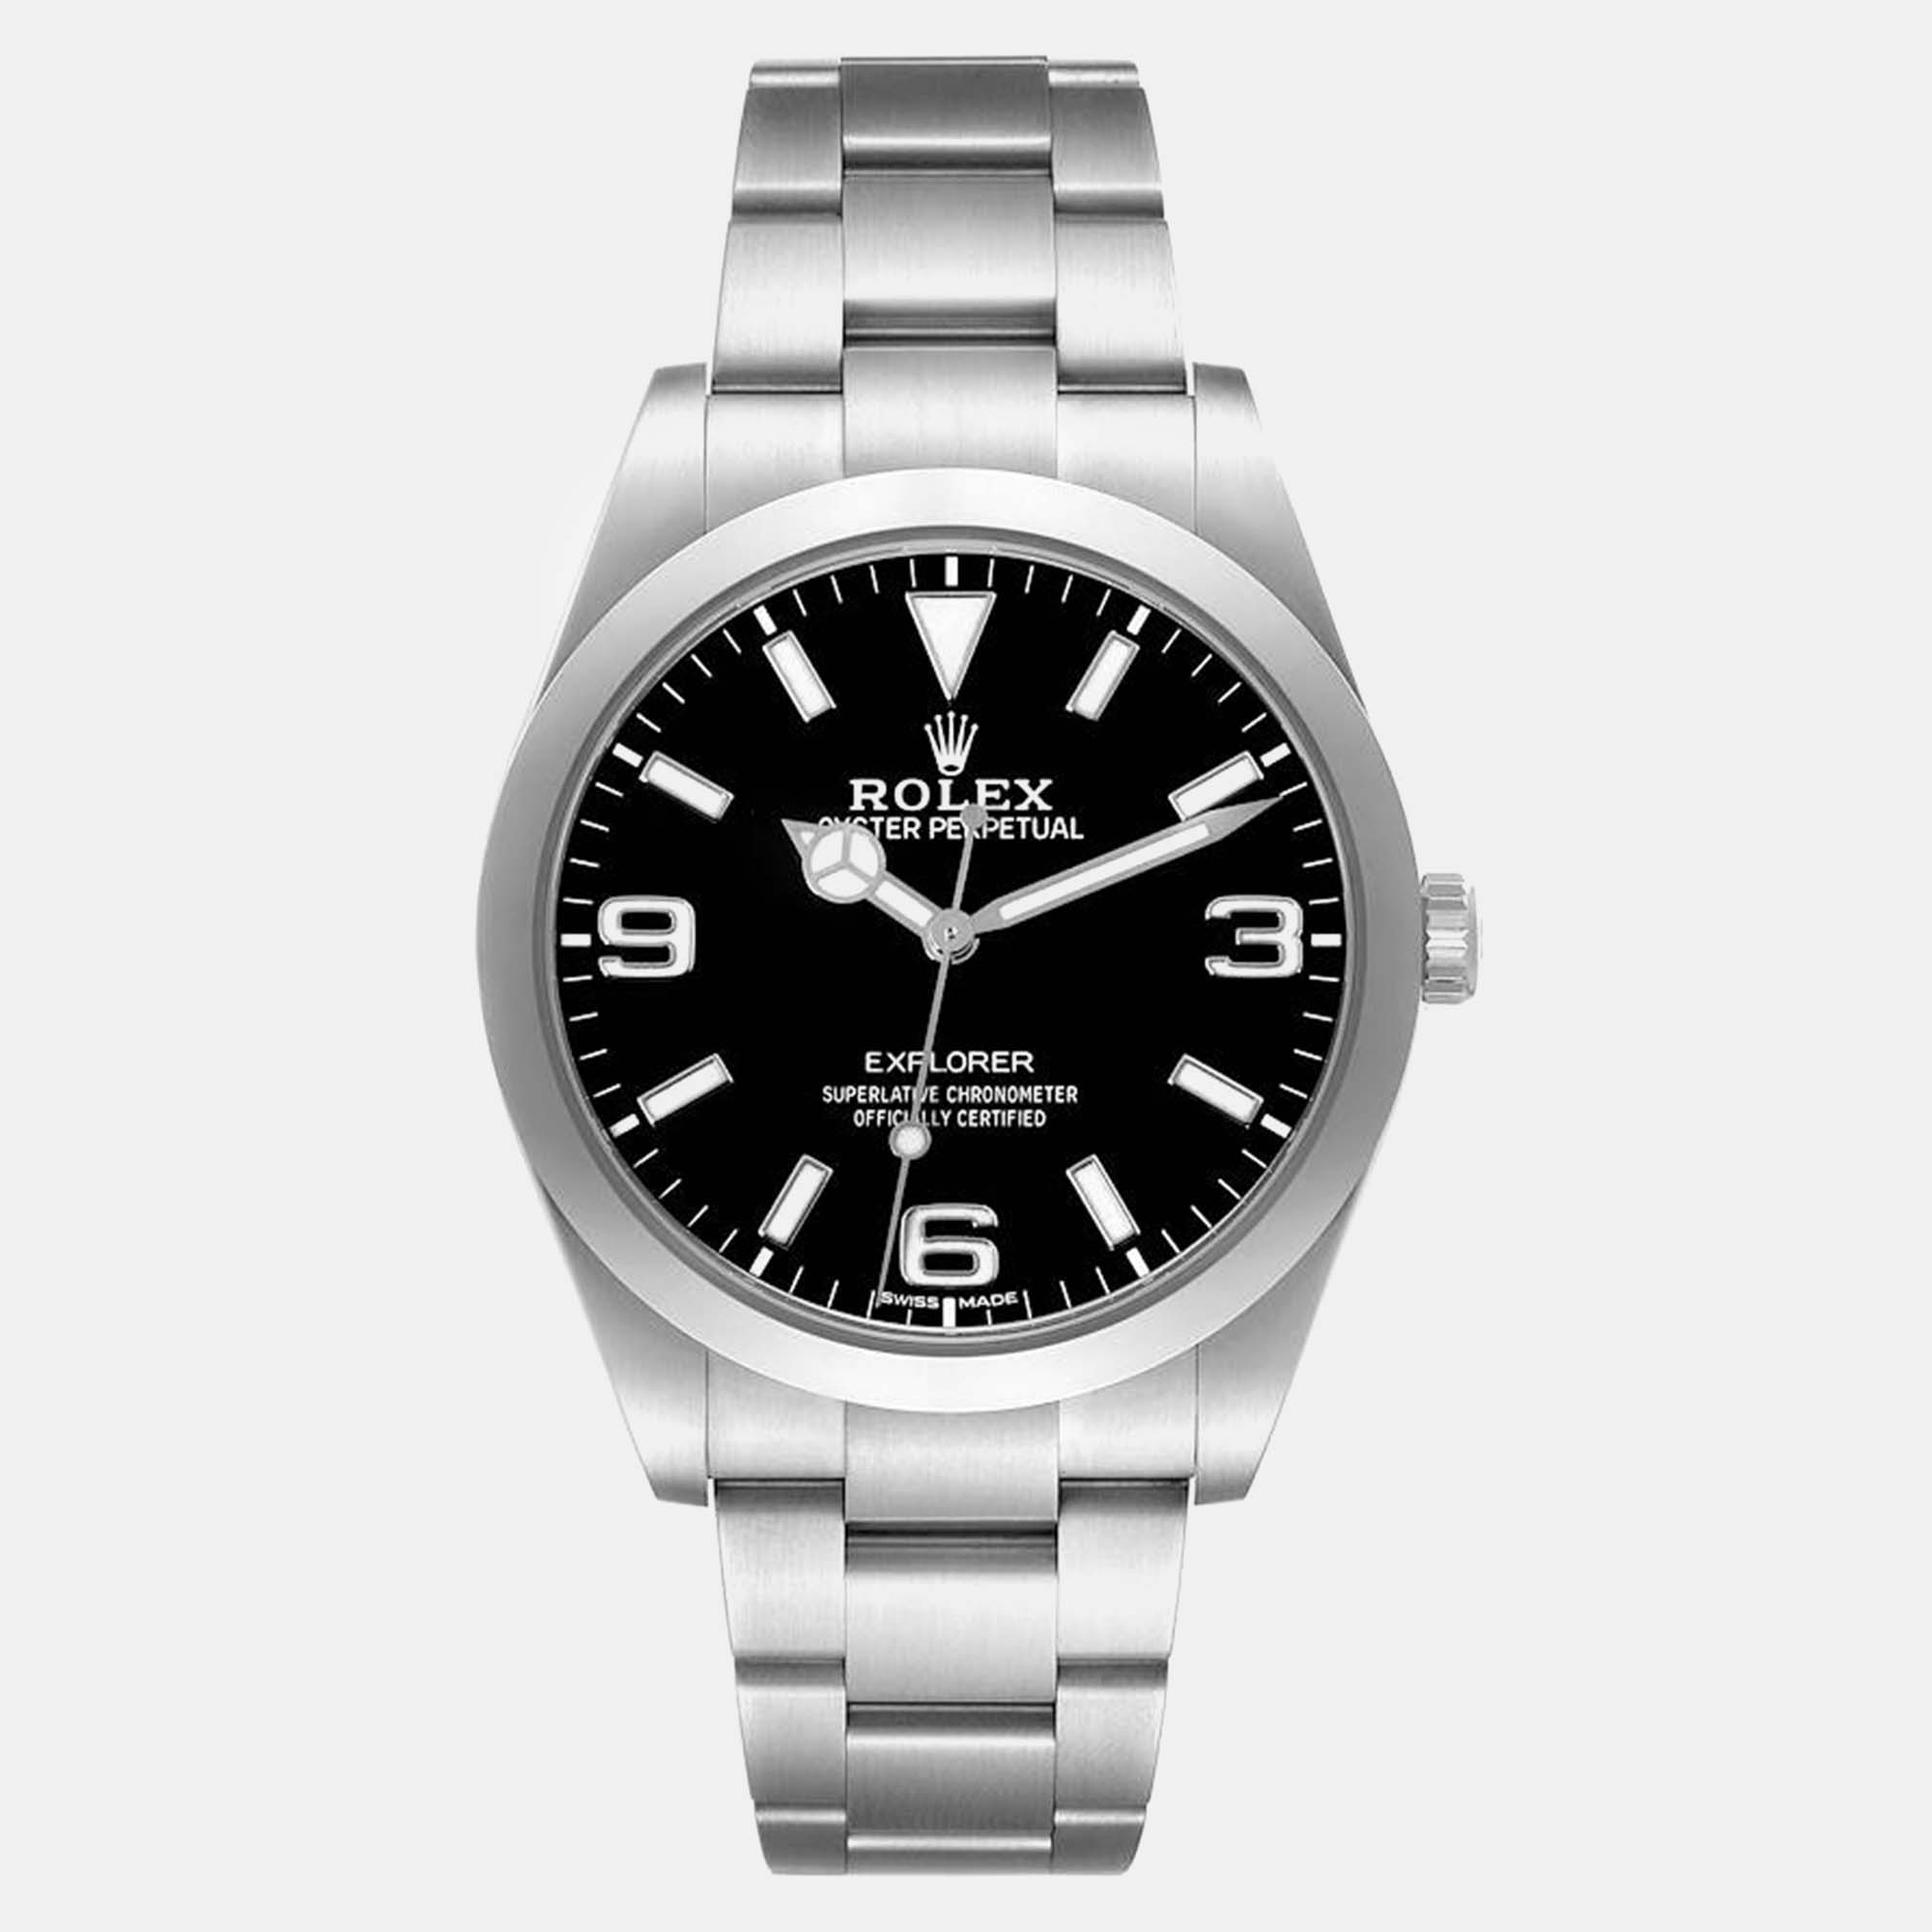 Rolex explorer i black dial steel men's watch 39 mm